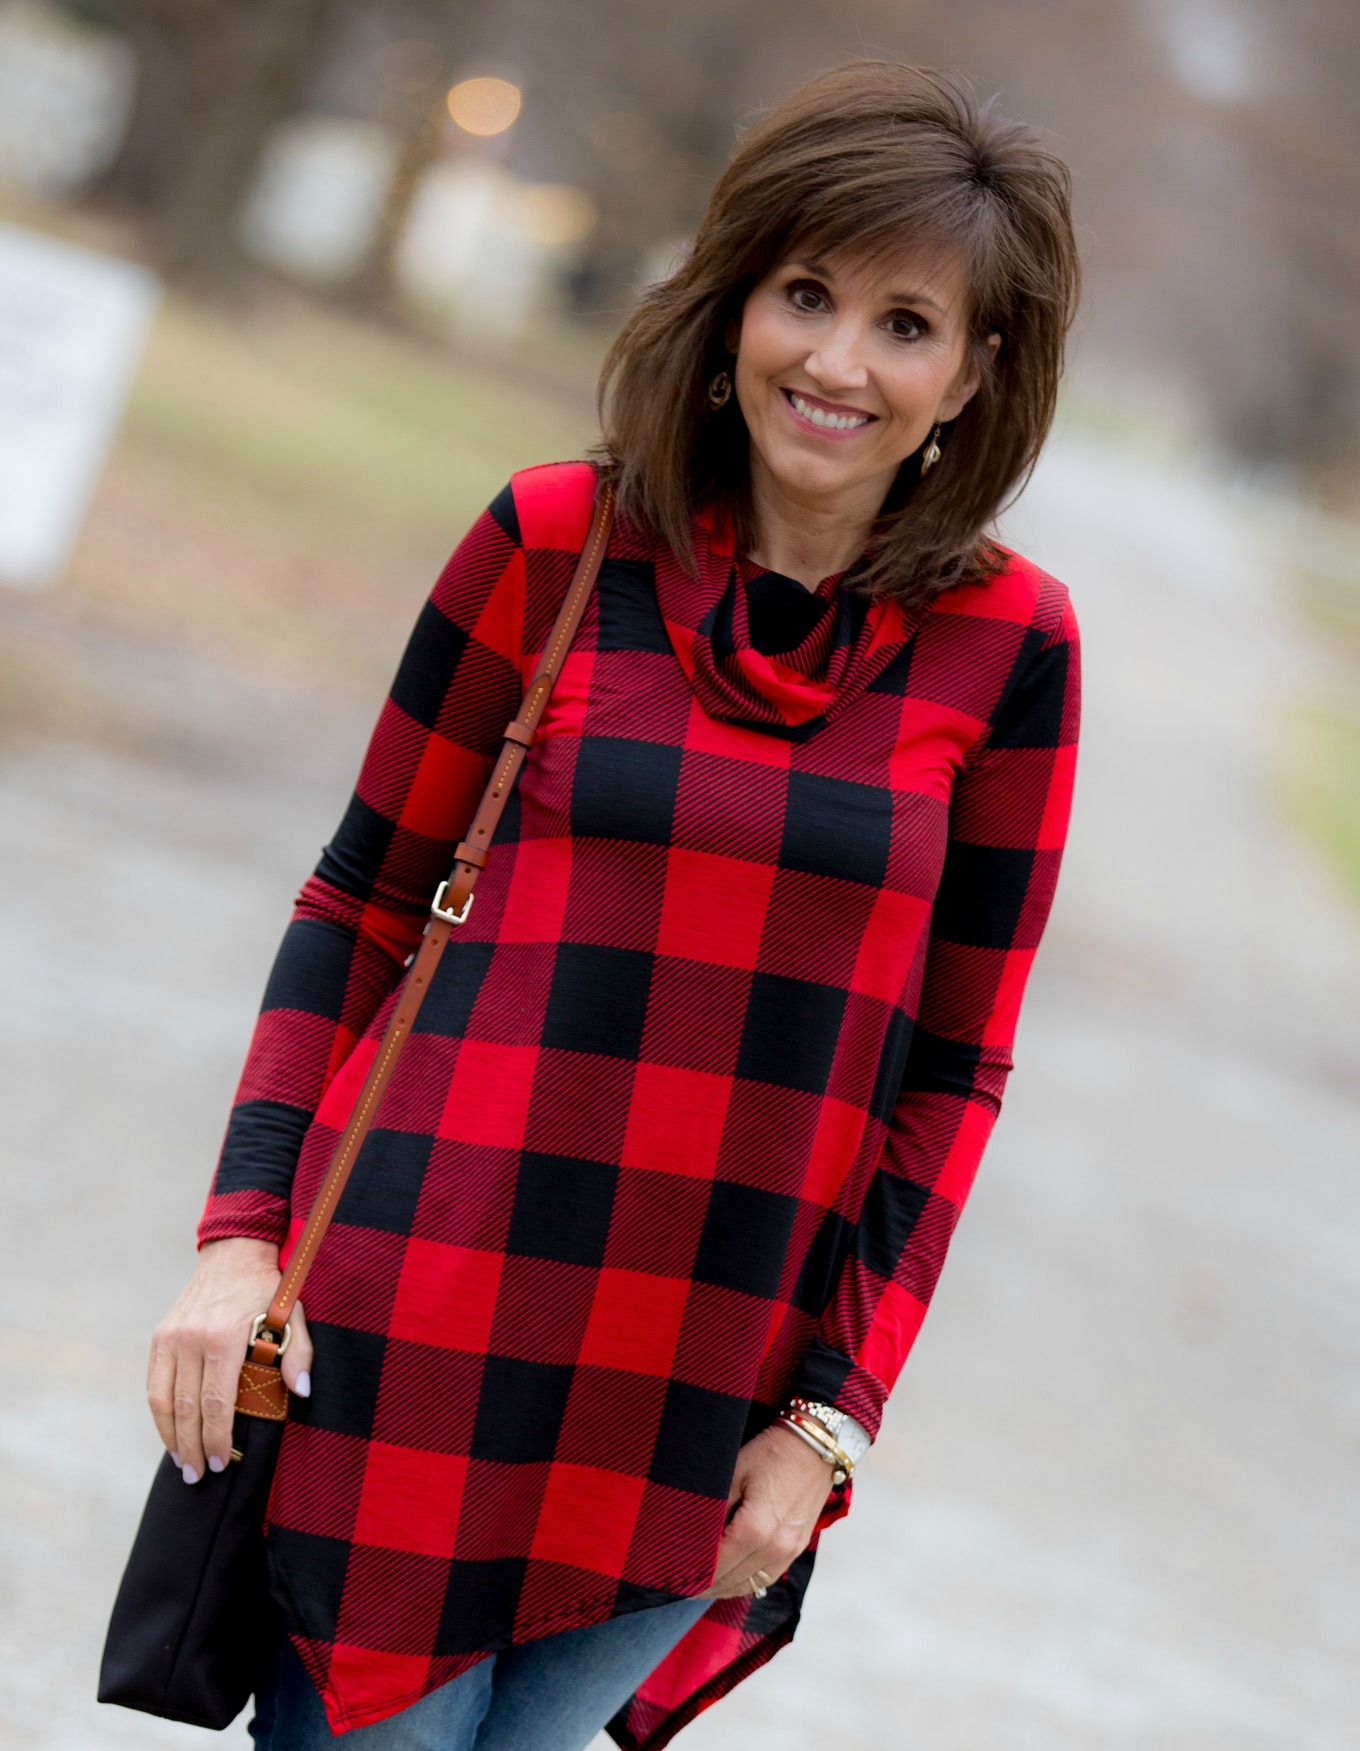 Fashion blogger, Cyndi Spivey, styling a buffalo check tunic from Glamour Farms.